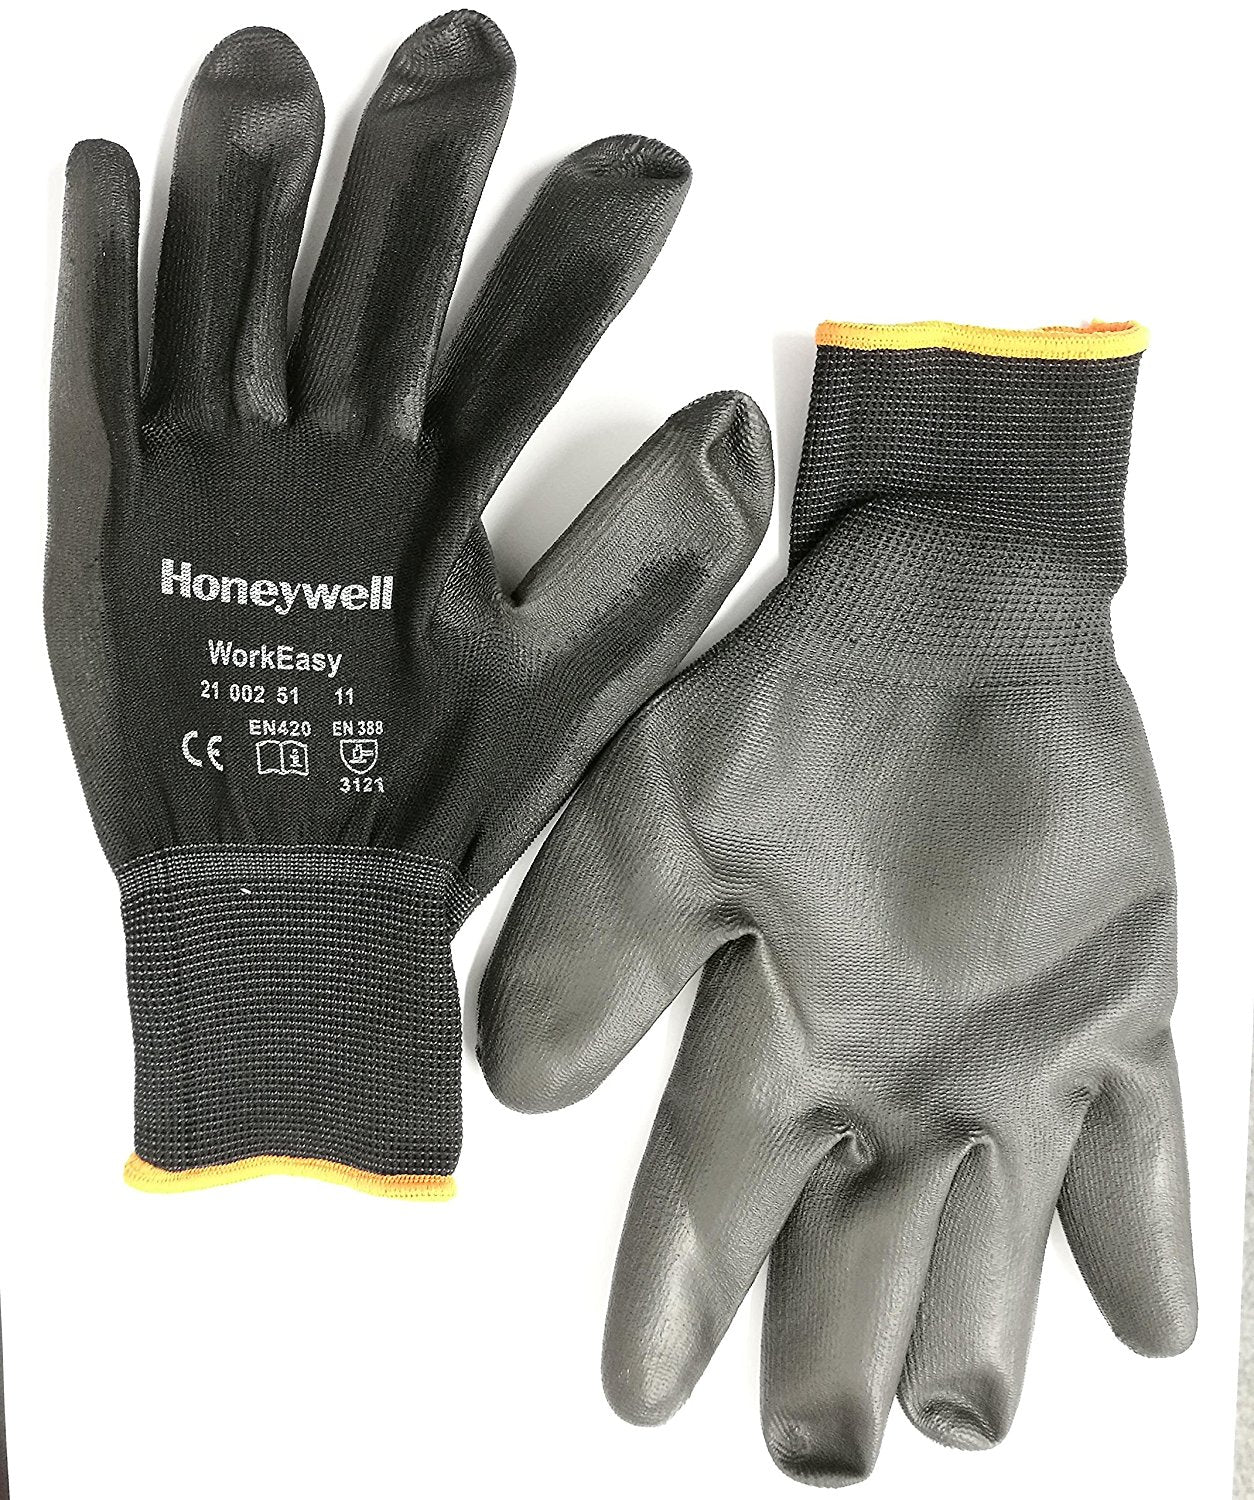 Honeywell Workeasy Black PU Work Gloves Pack of 10 Pairs